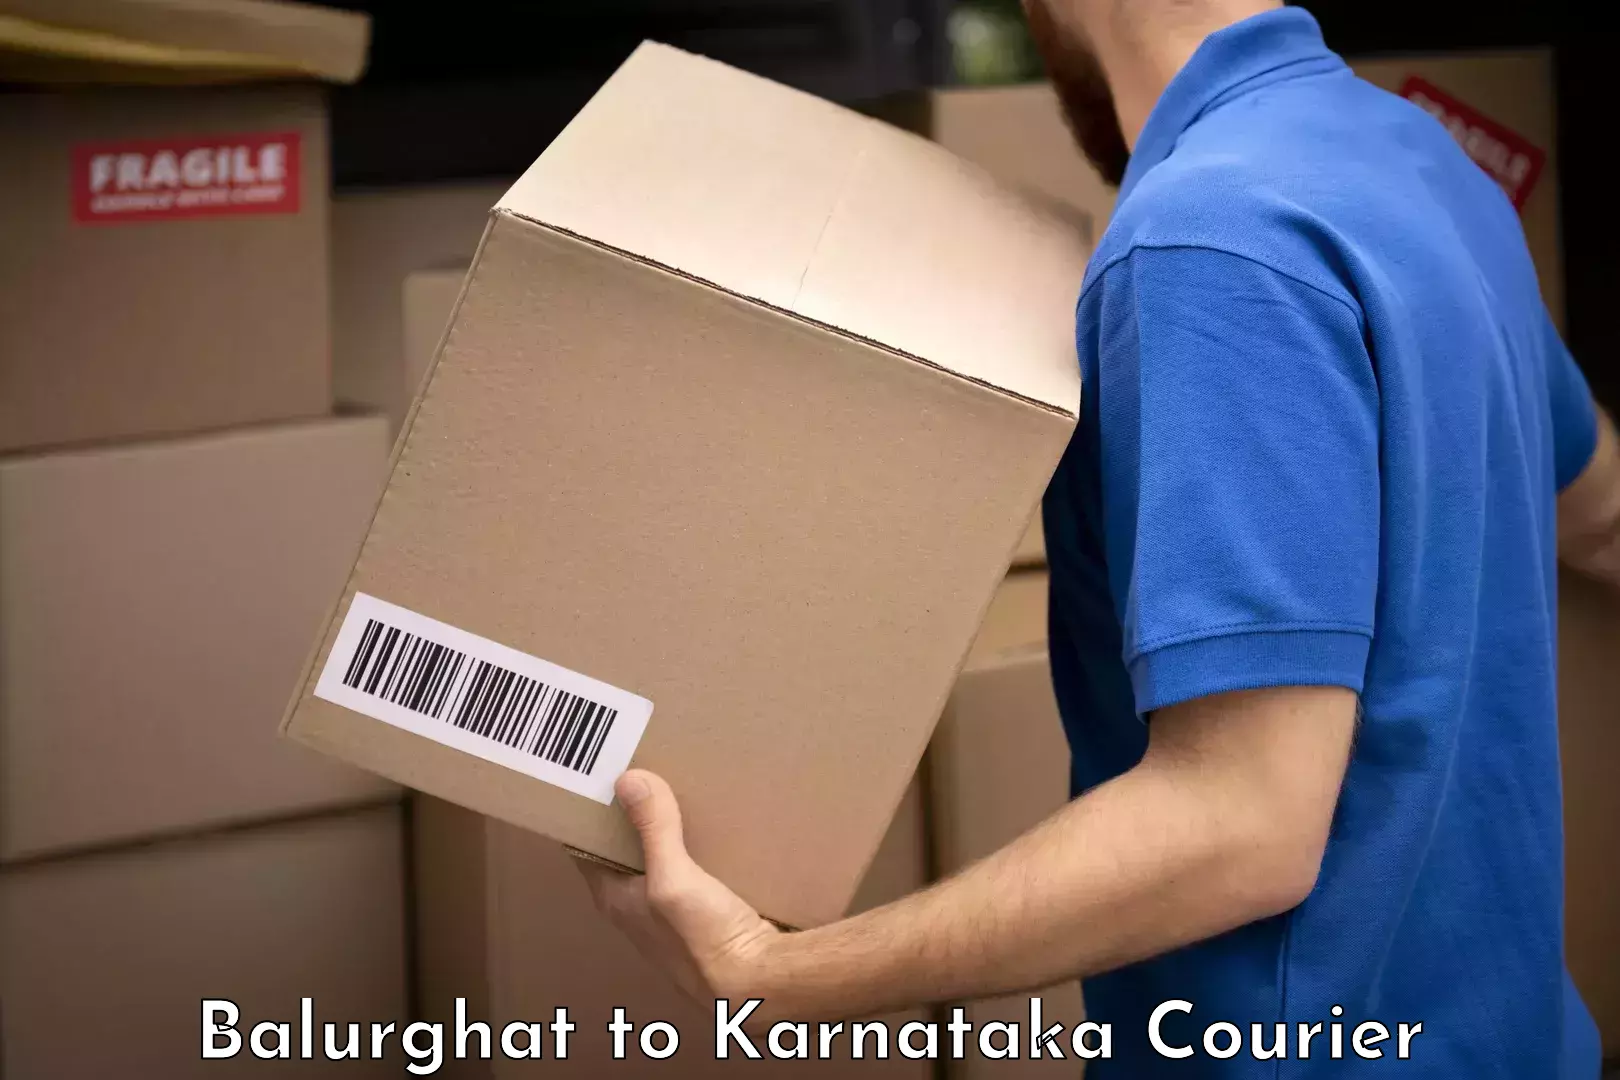 Electronic items luggage shipping Balurghat to Karnataka